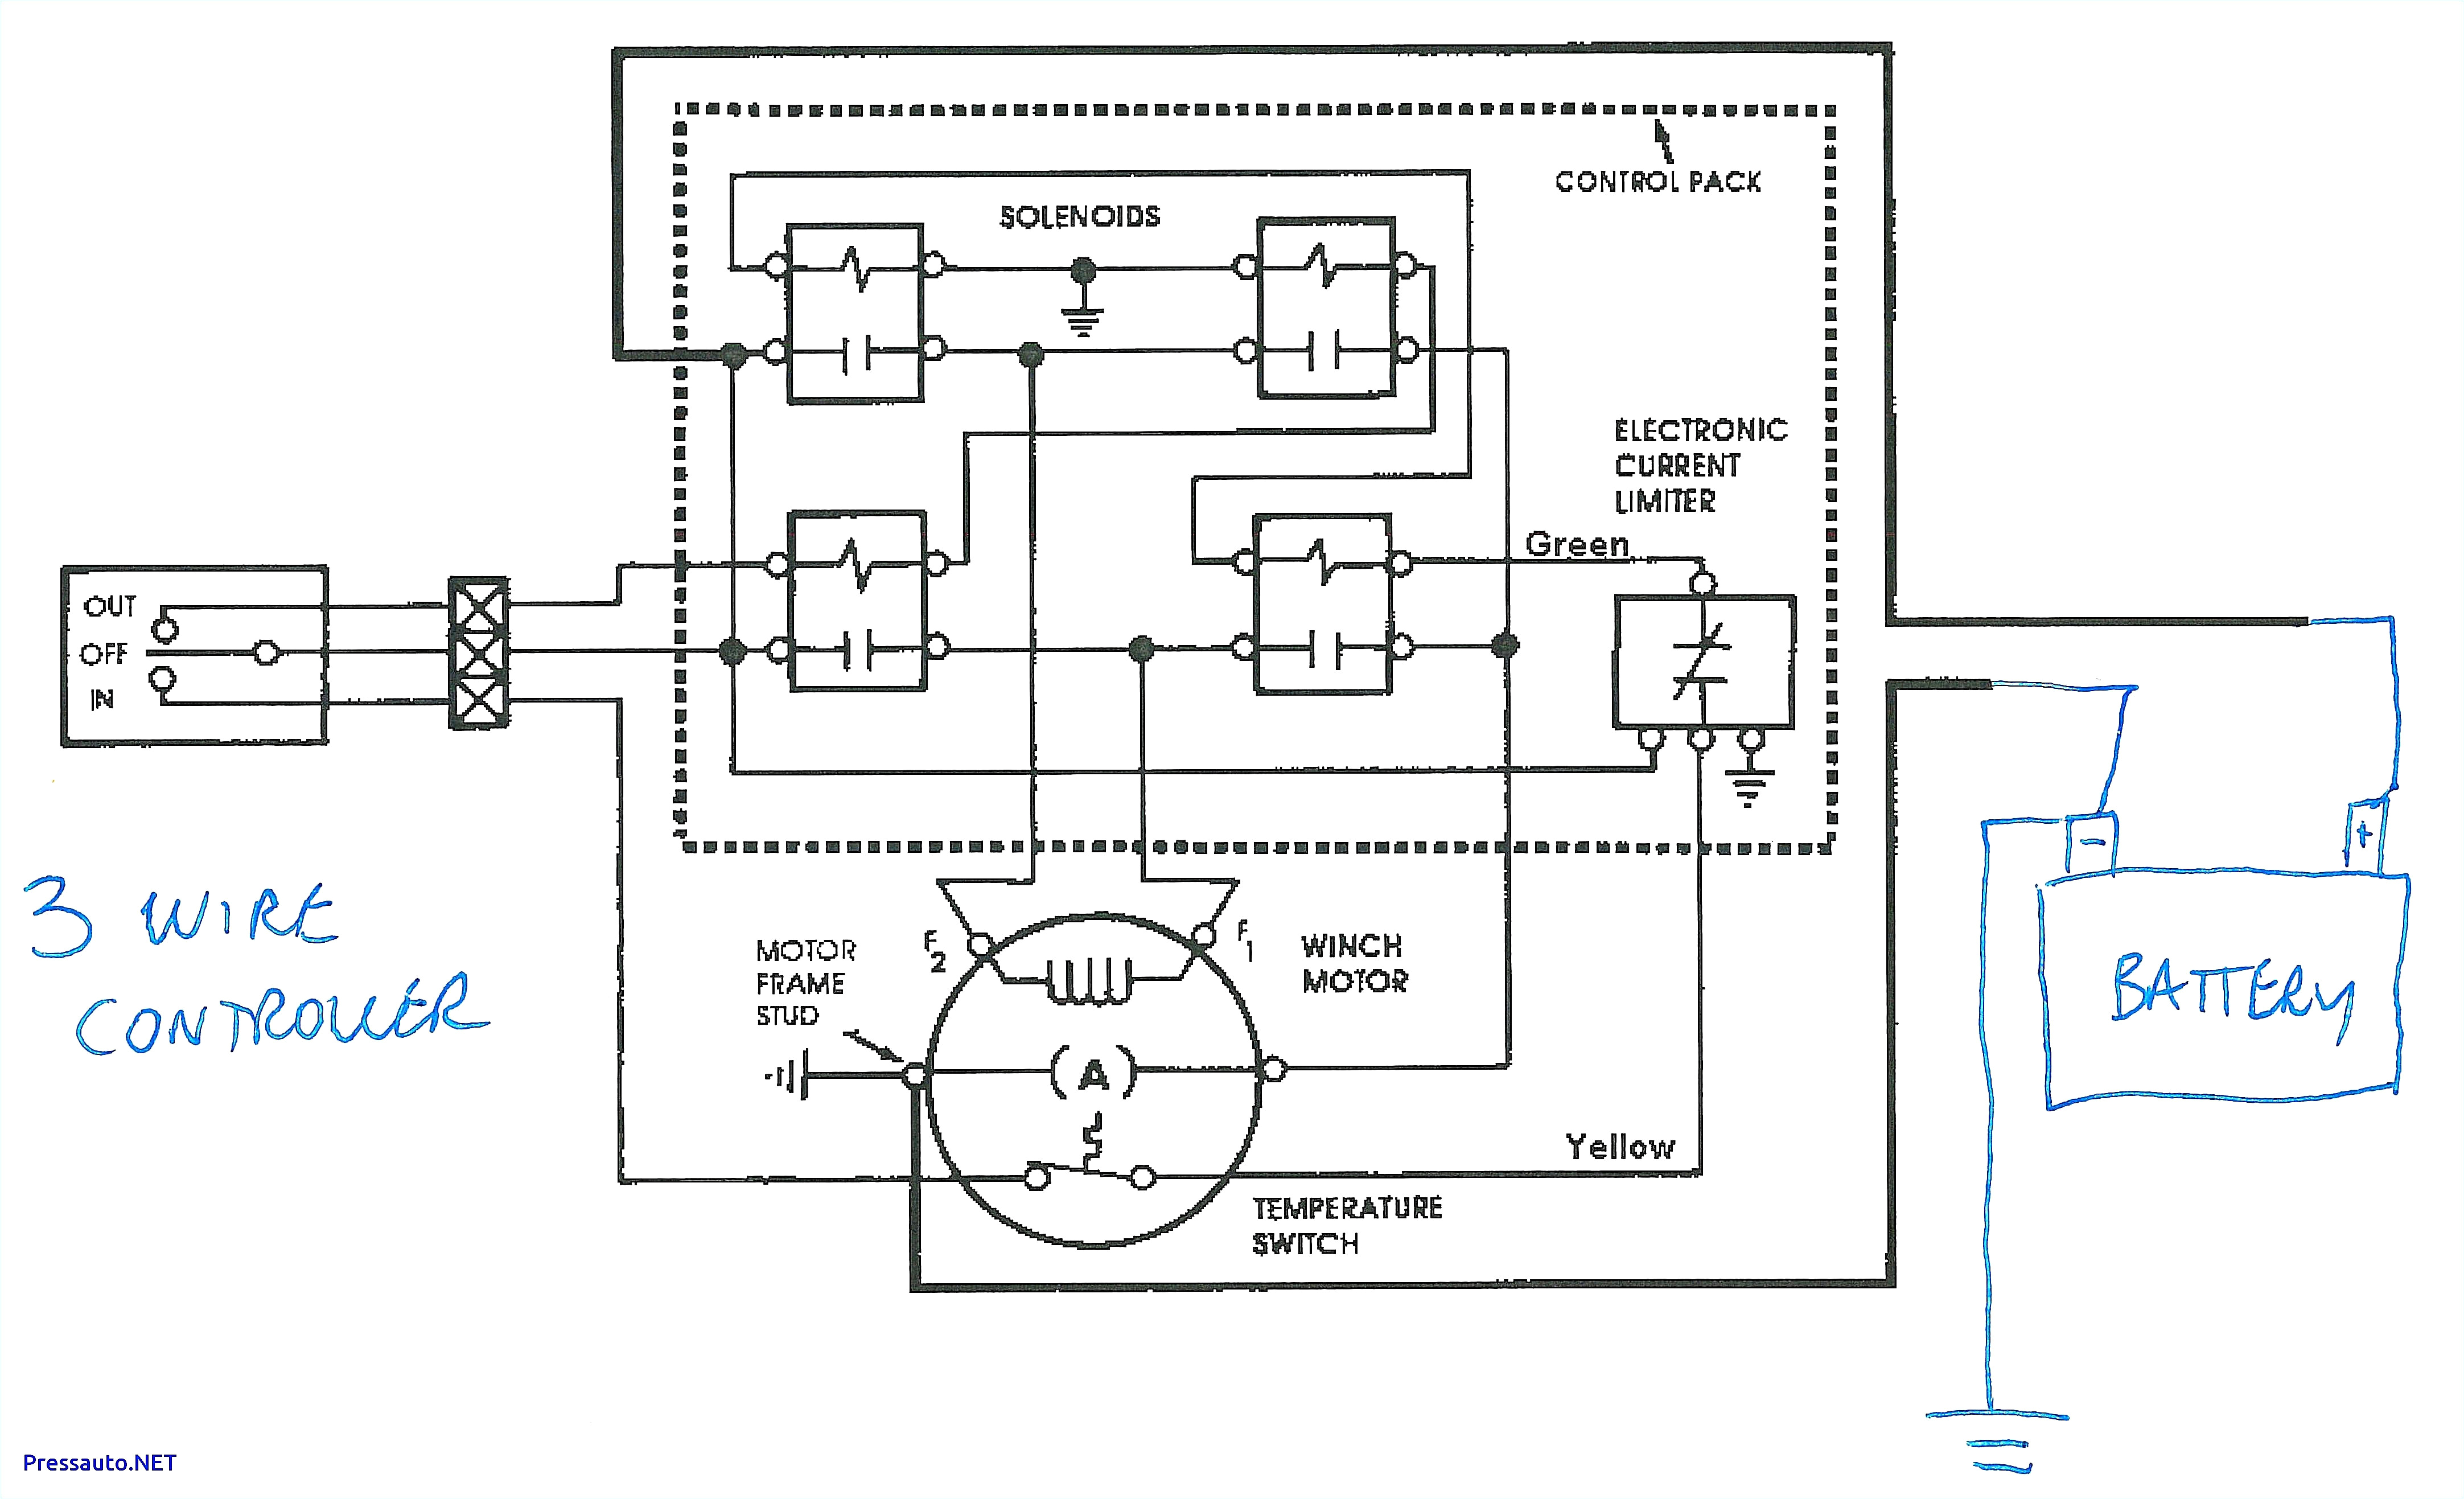 warn switch wiring wiring diagram name warn atv switch wiring